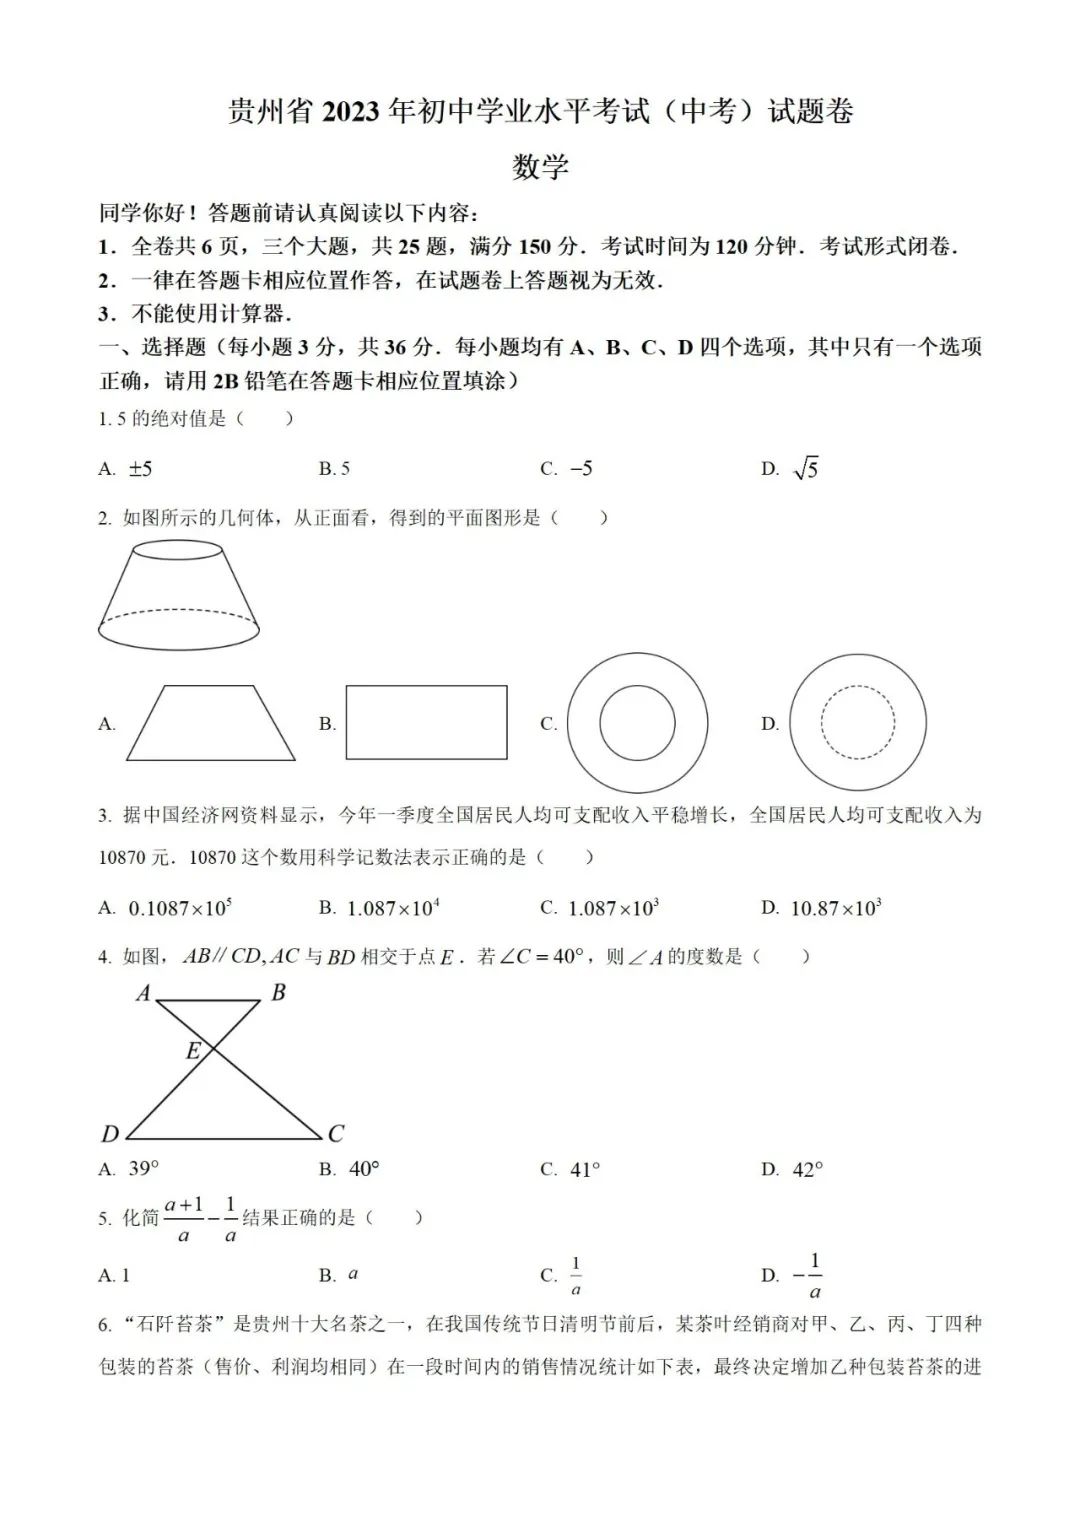 【中考真题】2023年贵州省中考数学真题 (带答案解析) 第1张